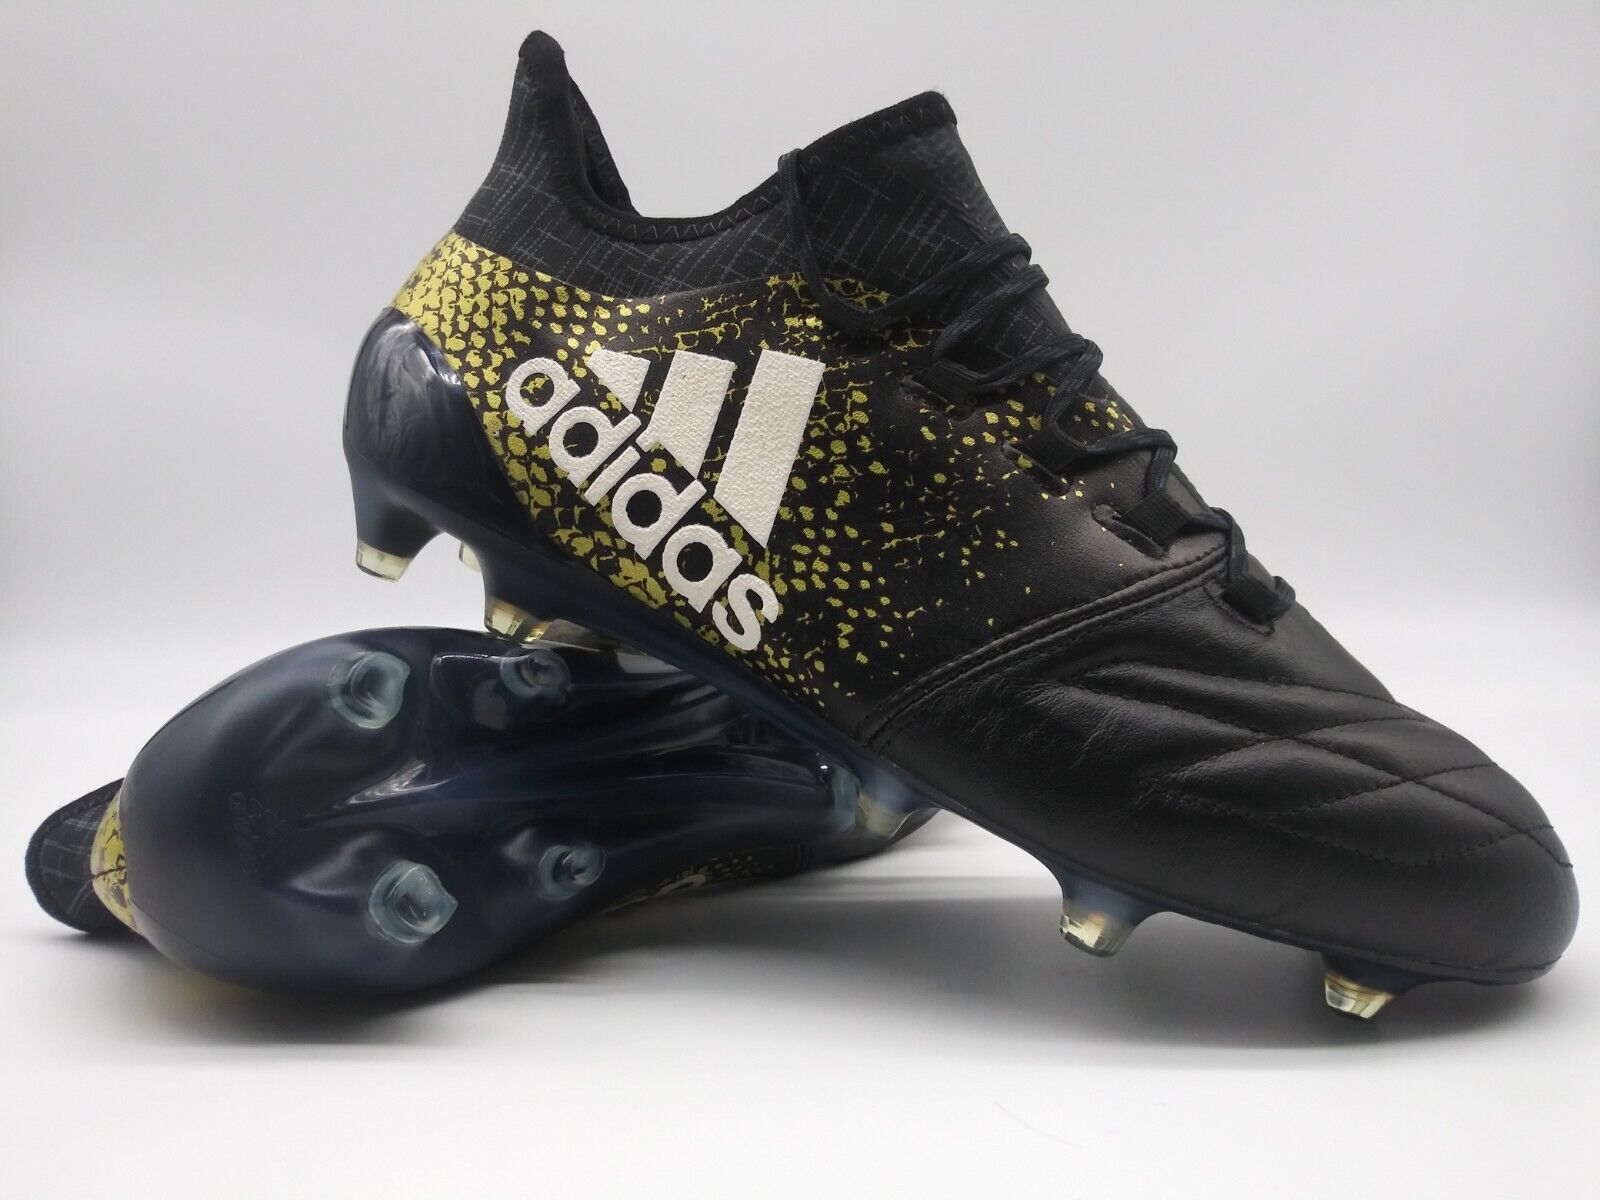 Grootte Plagen ruw Adidas X 16.1 FG Leather Black Gold – Villegas Footwear